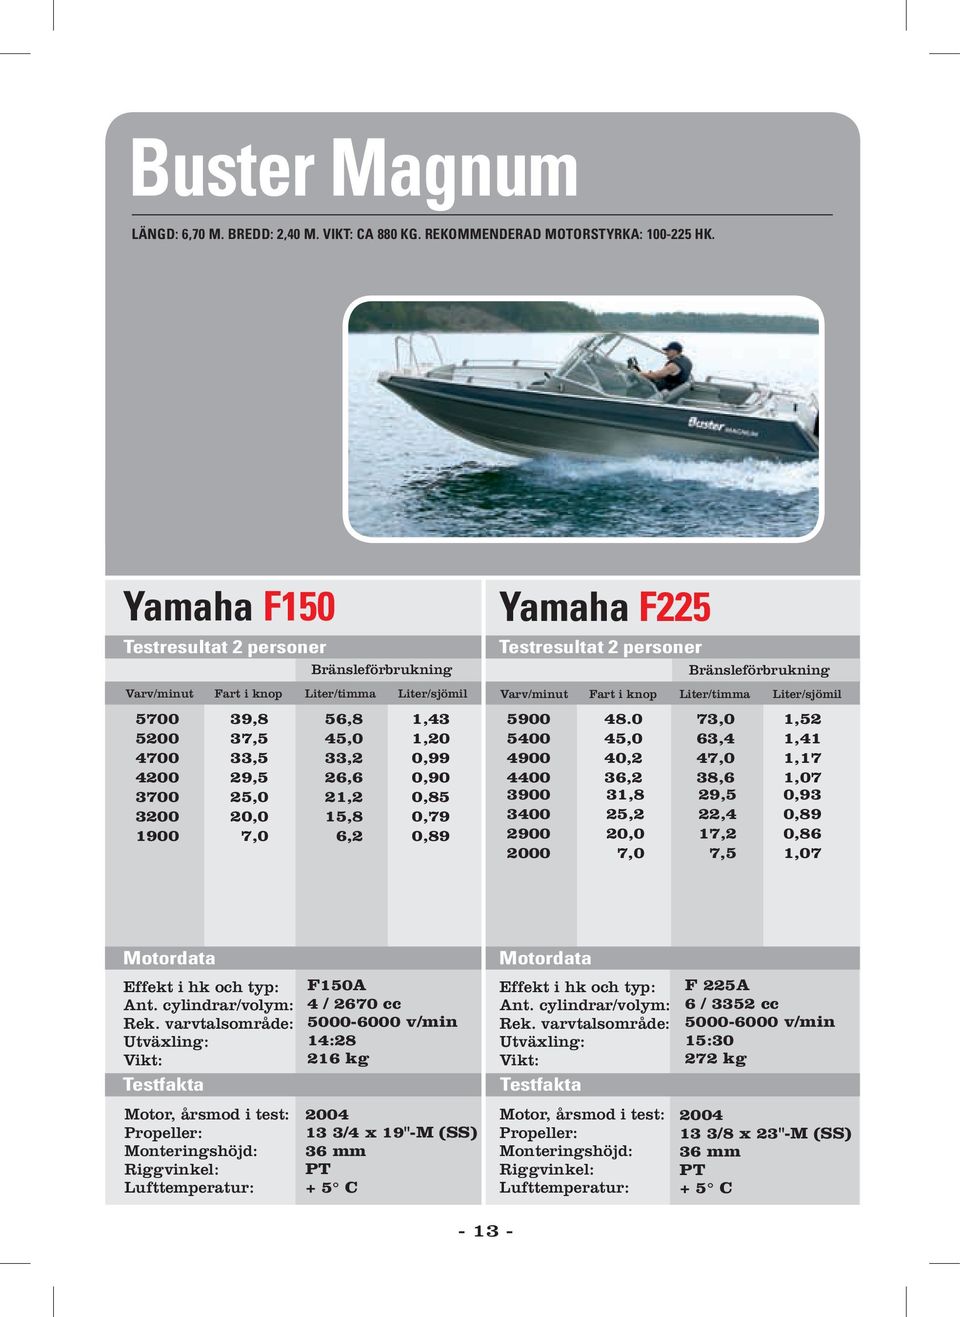 Yamaha F225 3900 3400 2900 2000 48.